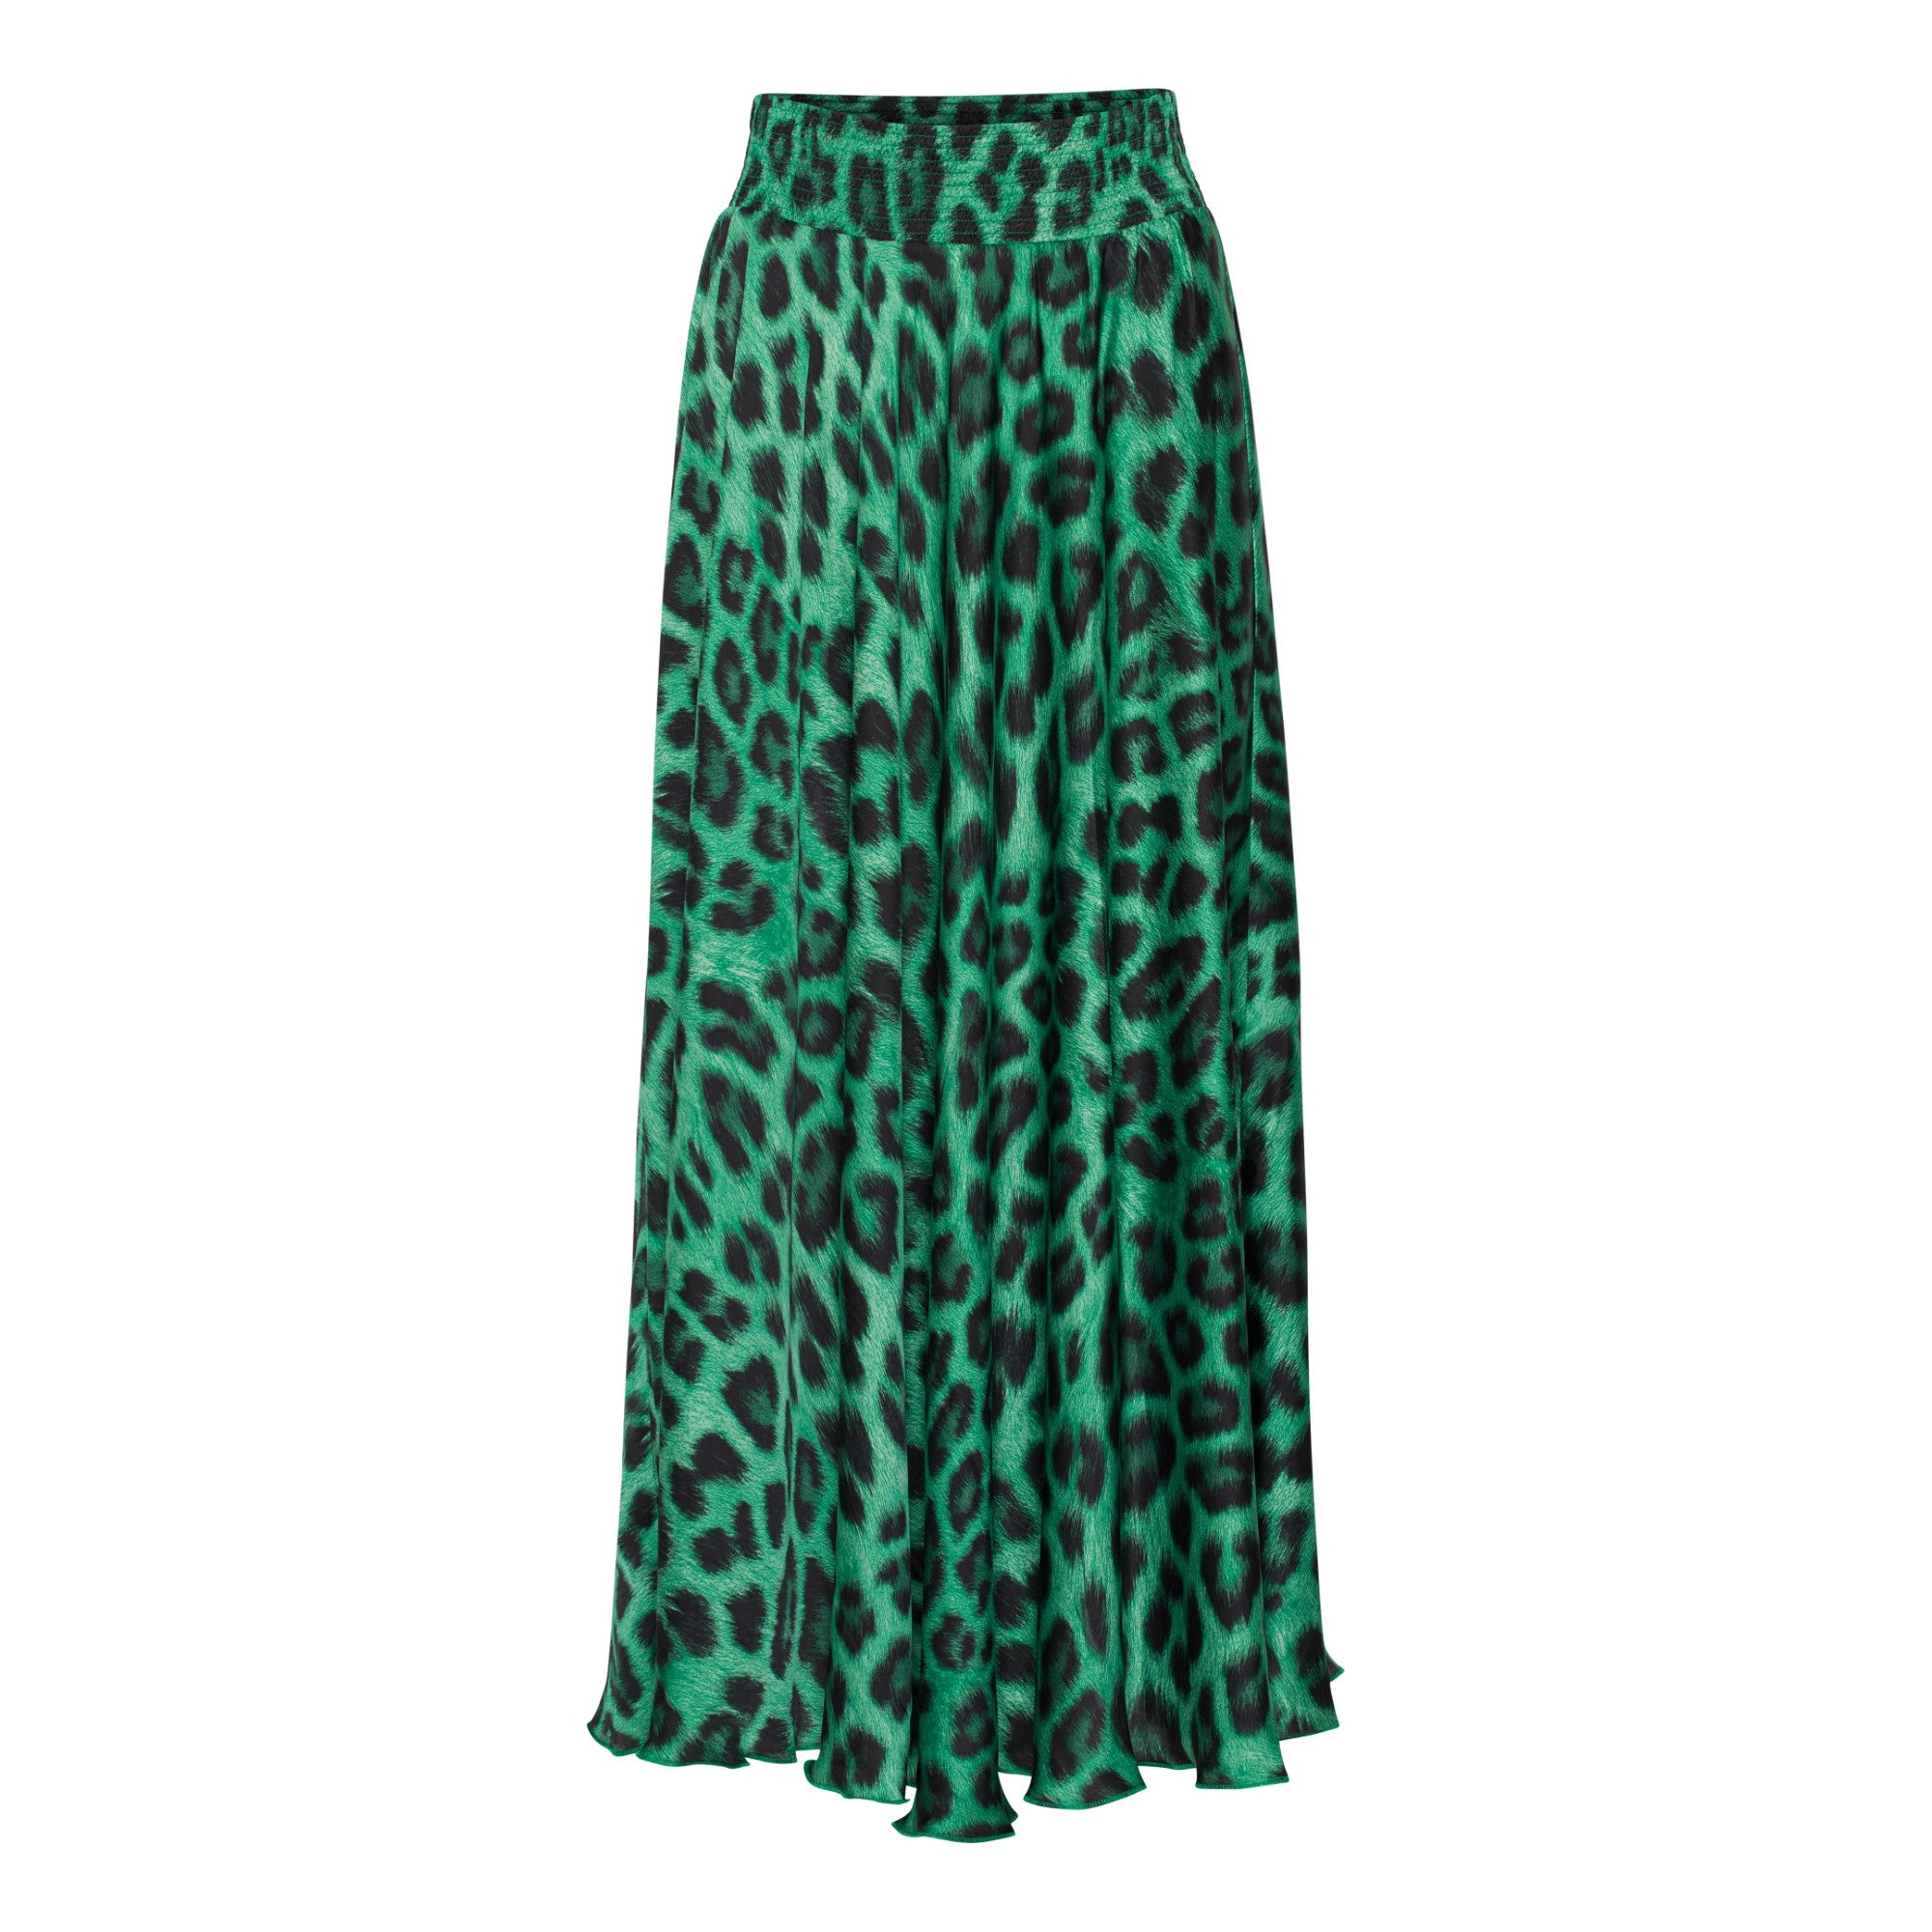 Karmamia Savannah Skirt Emerald Leo